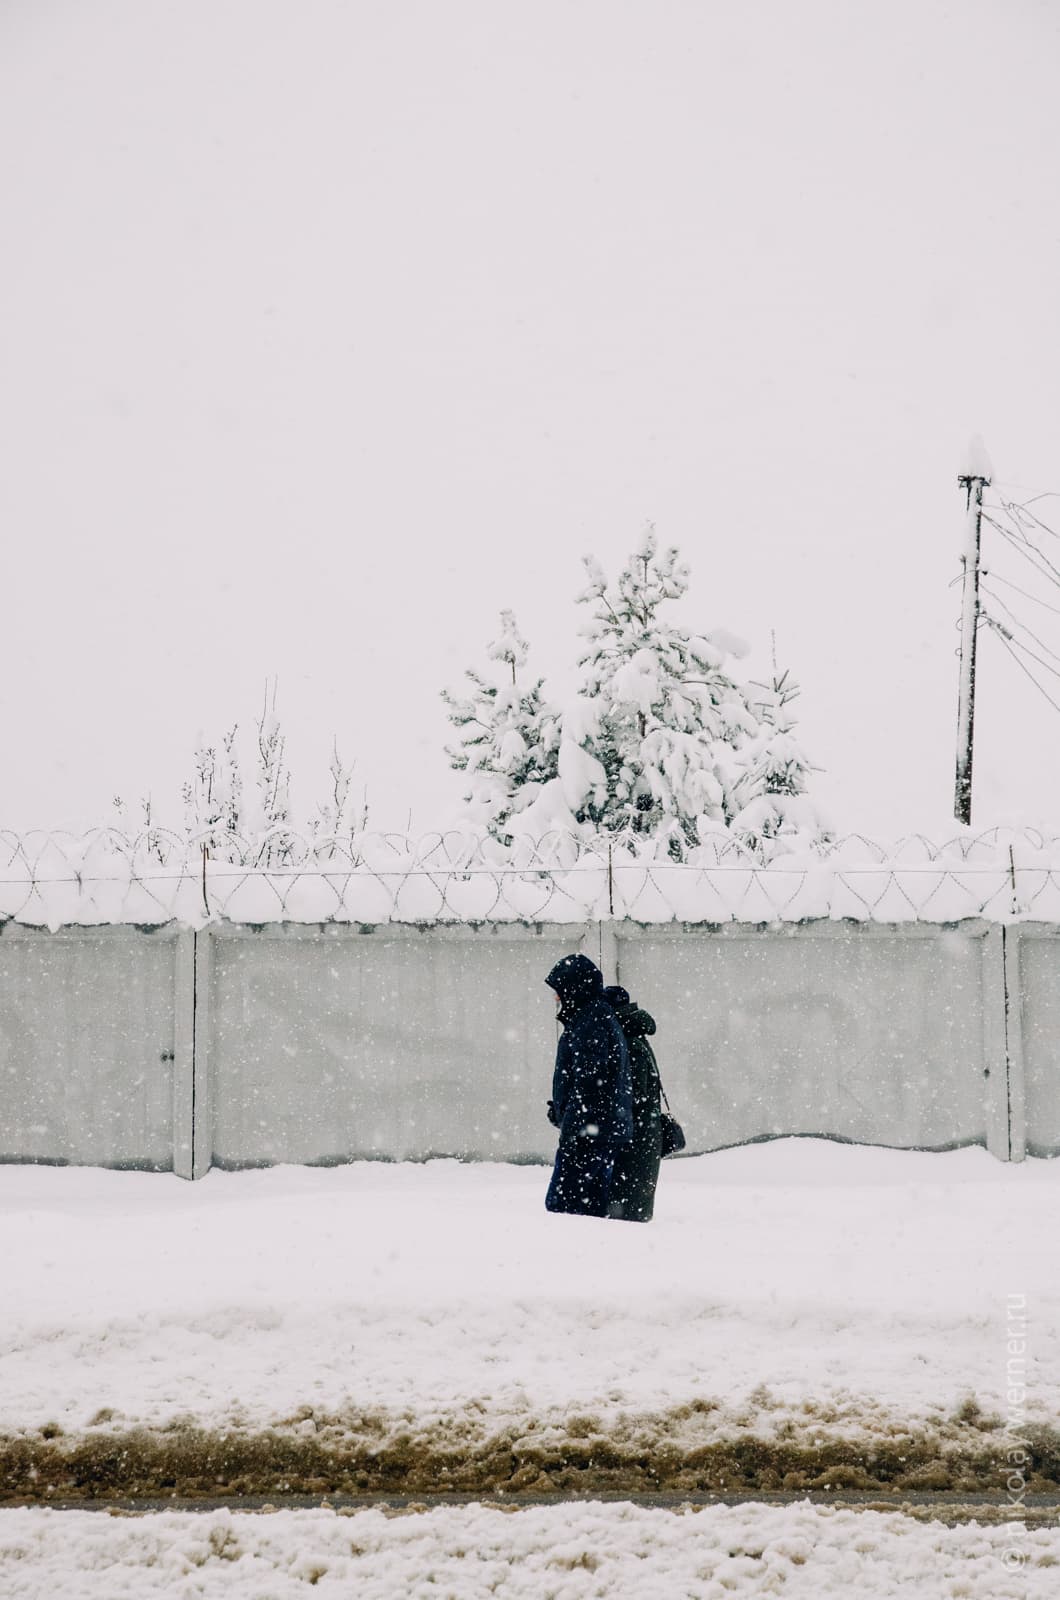 Кусочек тёмного асфальта на переднем плане, снежная стена дальше, идут люди, которых за ней видно по пояс, дальше бетонный забор и укрытая снегом ель за ним